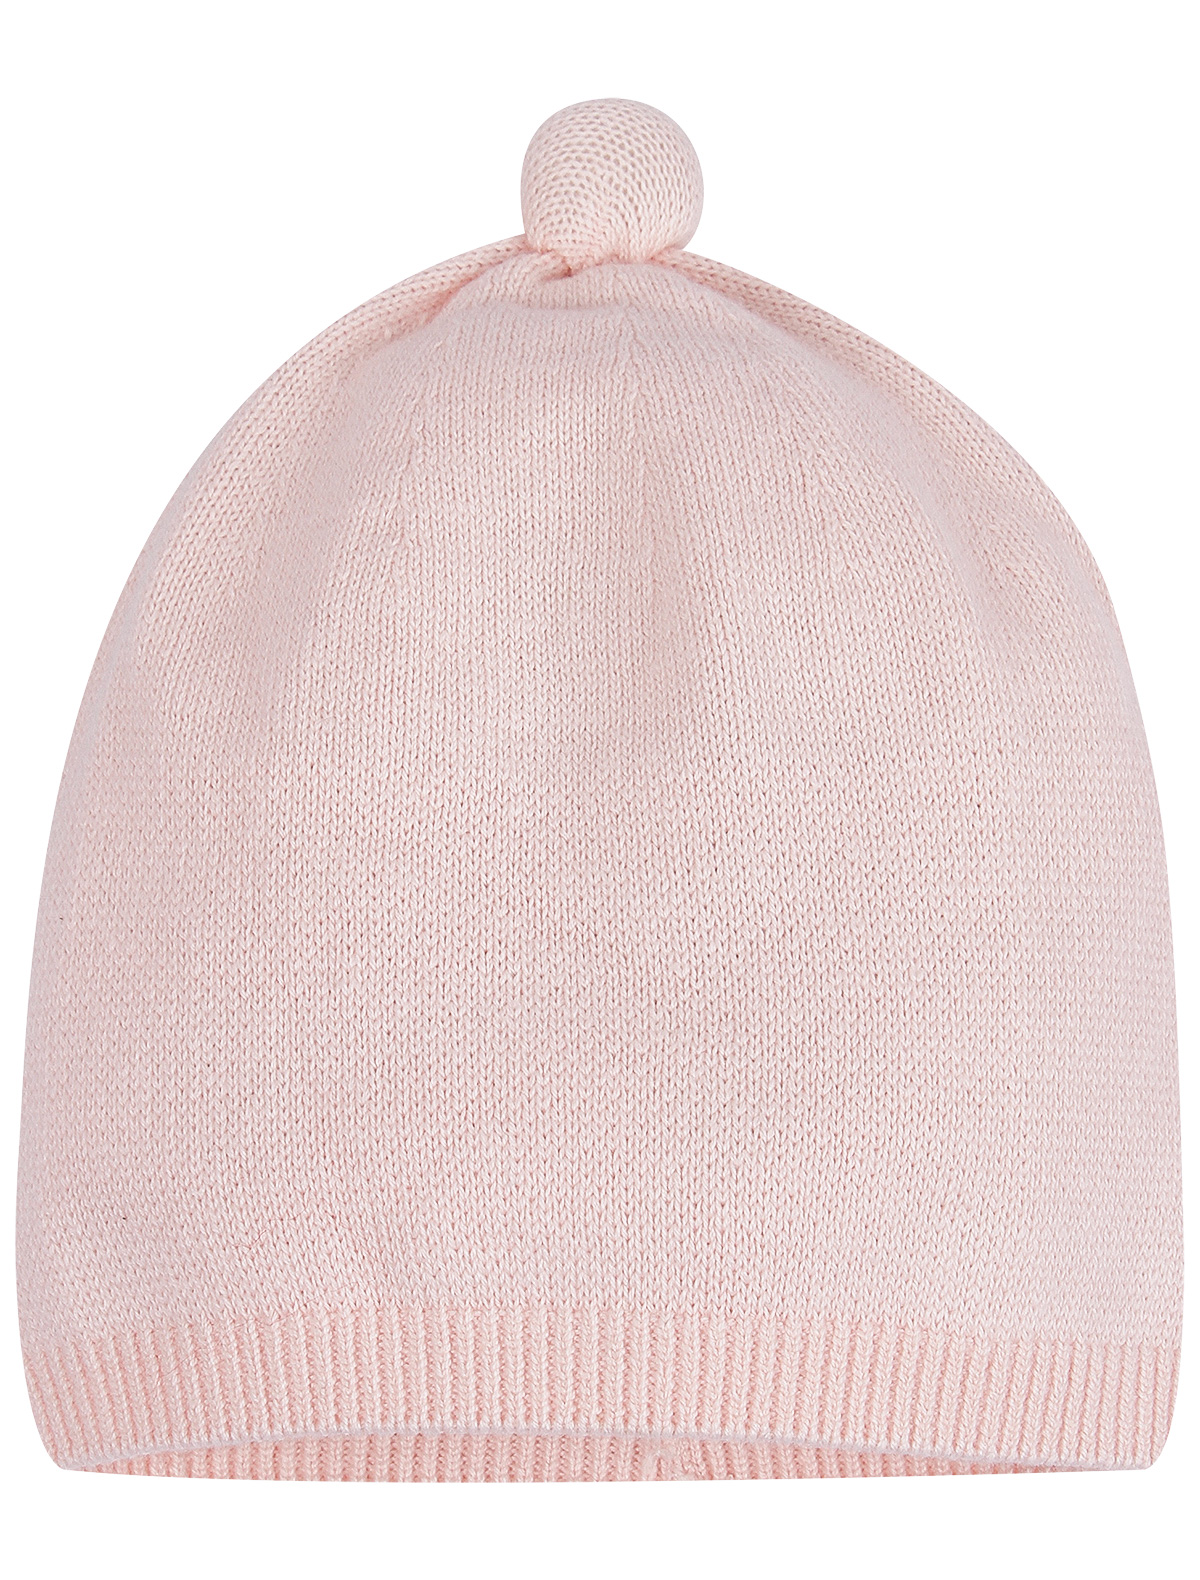 шапка mayoral малыши, розовая